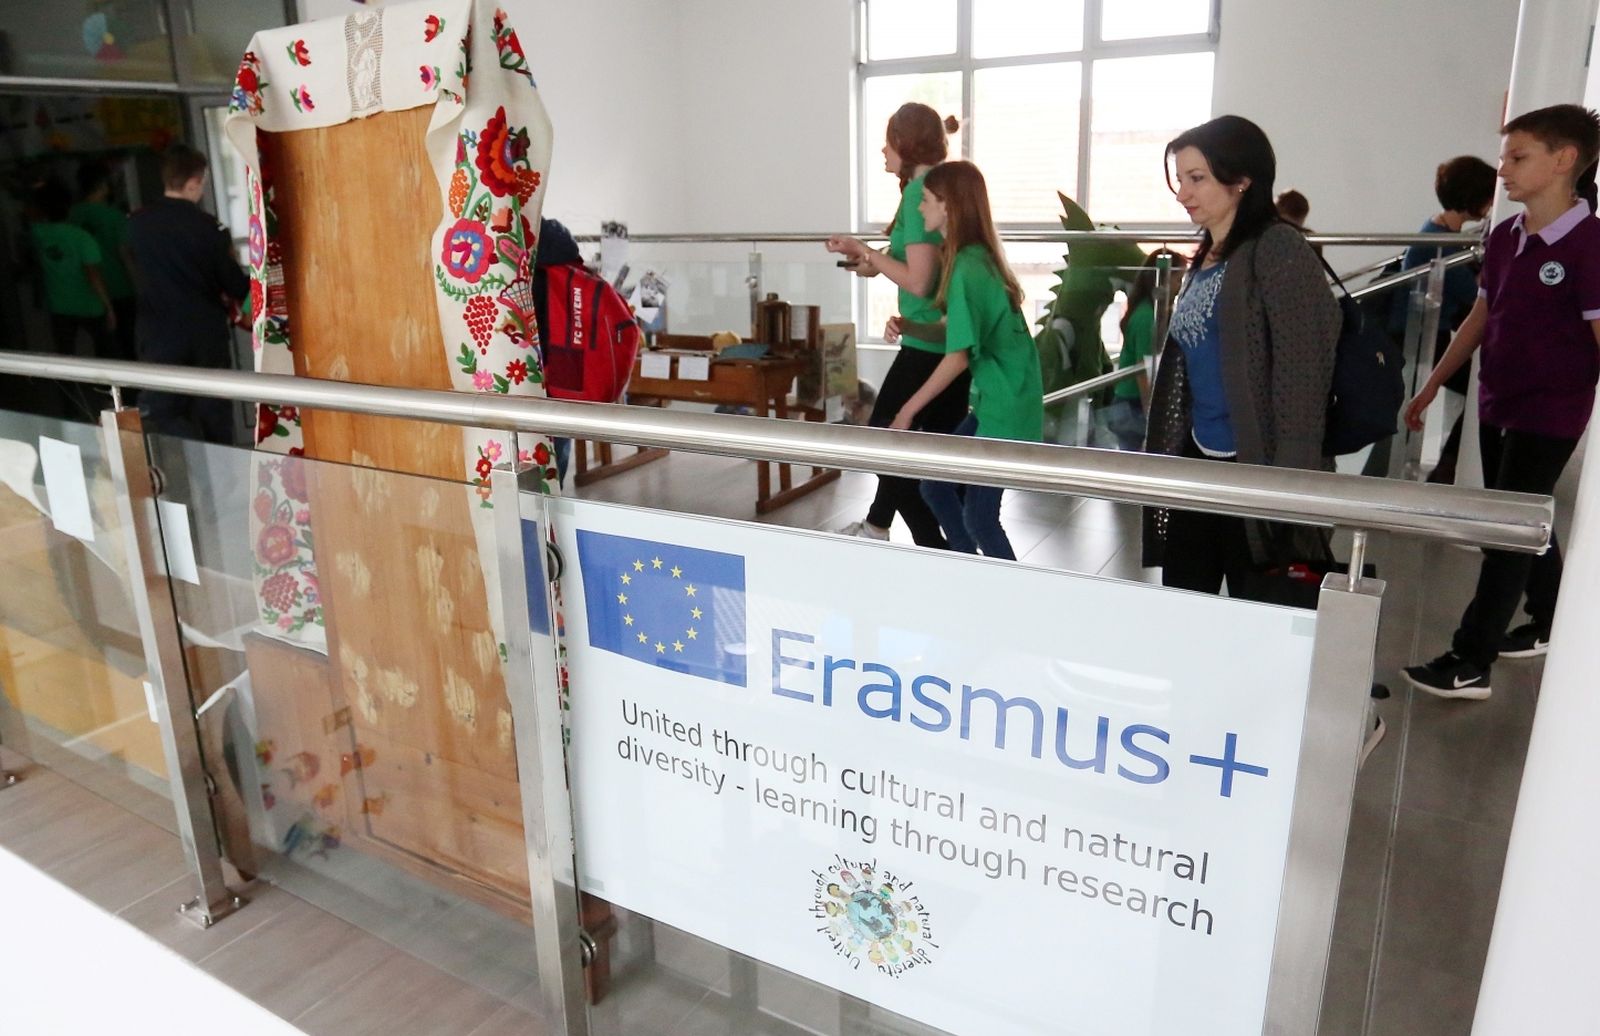 08.05.2017., Zagreb - Osnovnoskolci iz Poljske, Ceske i Slovacke posjetili su Osnovnu skolu Odra u sklopu projekta Erasmus plus.
Photo: Borna Filic/PIXSELL